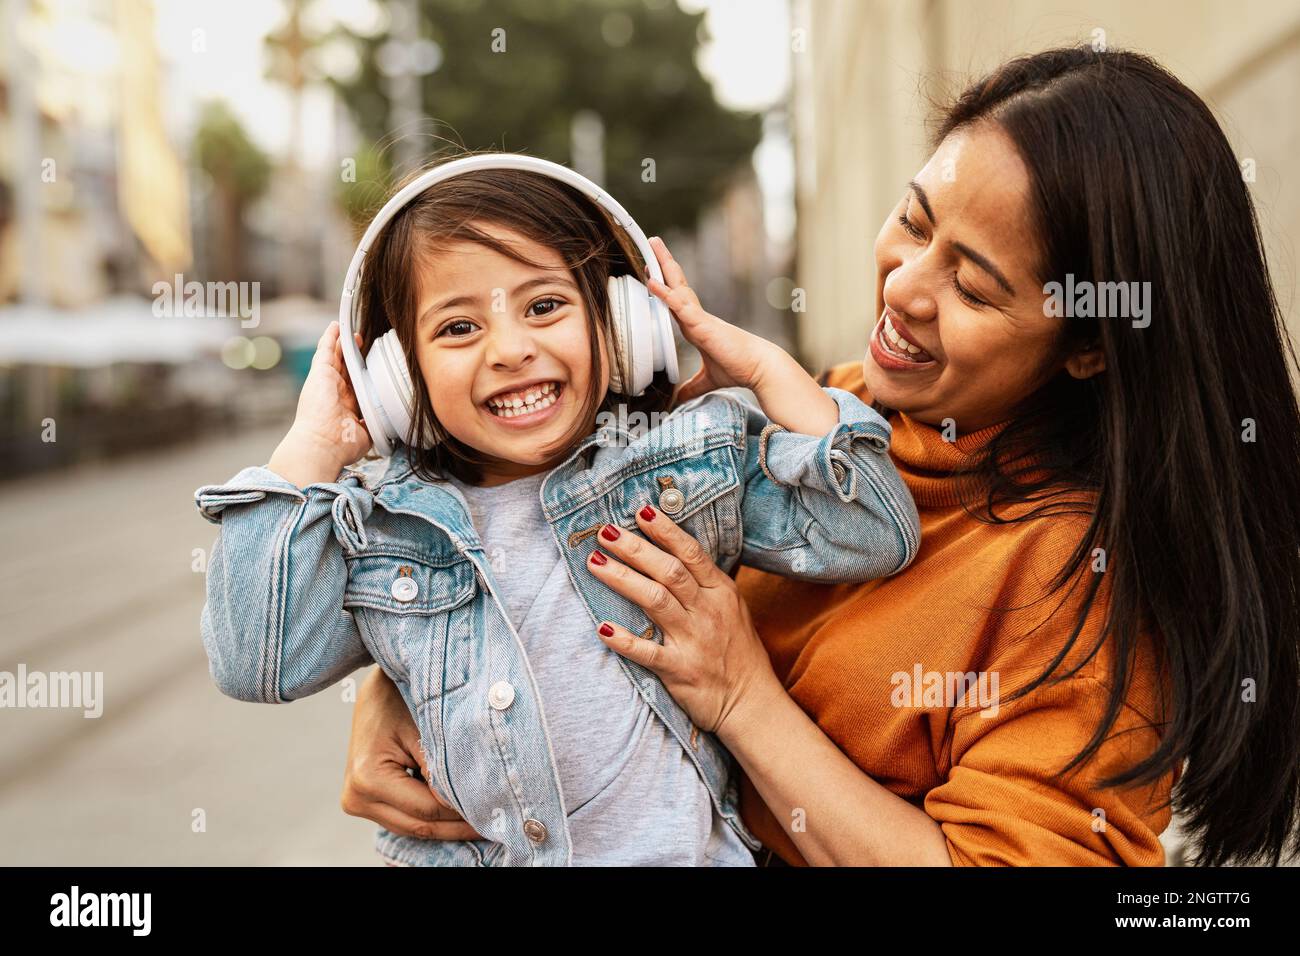 Felice madre filippina con sua figlia divertirsi ascoltando musica con le cuffie nel centro della città - concetto di amore per la famiglia Foto Stock